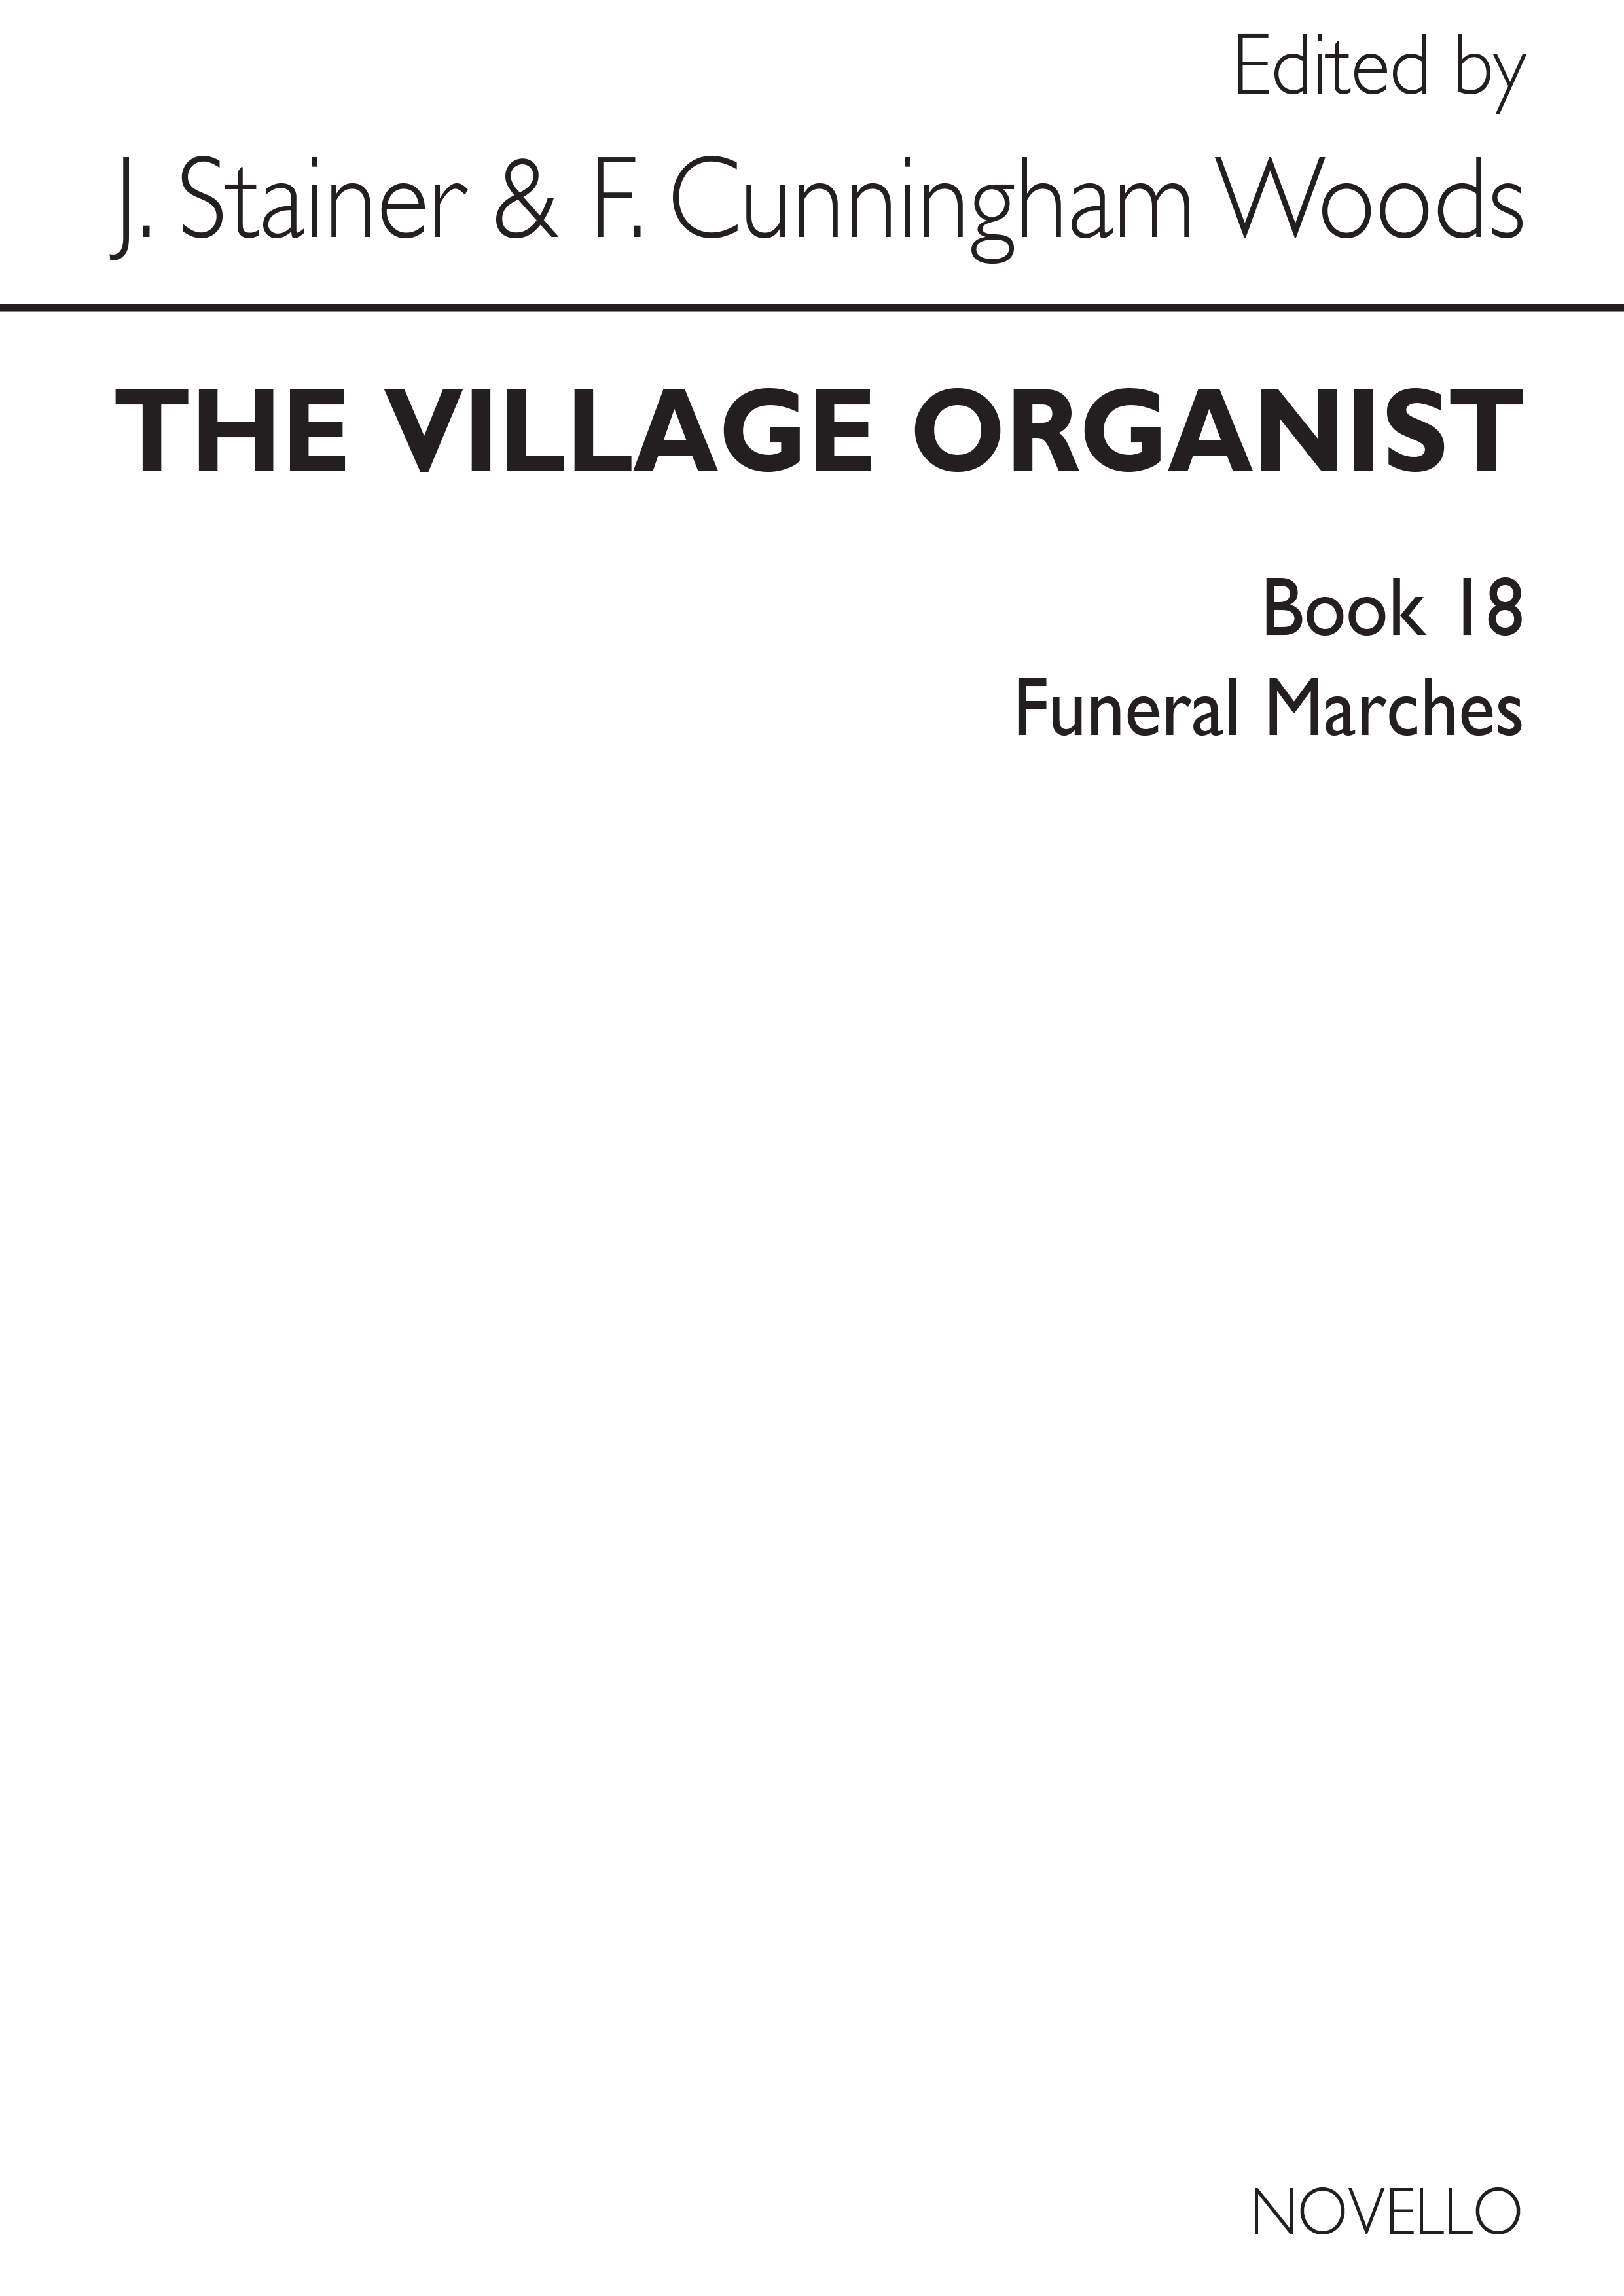 Village Organist Book 18